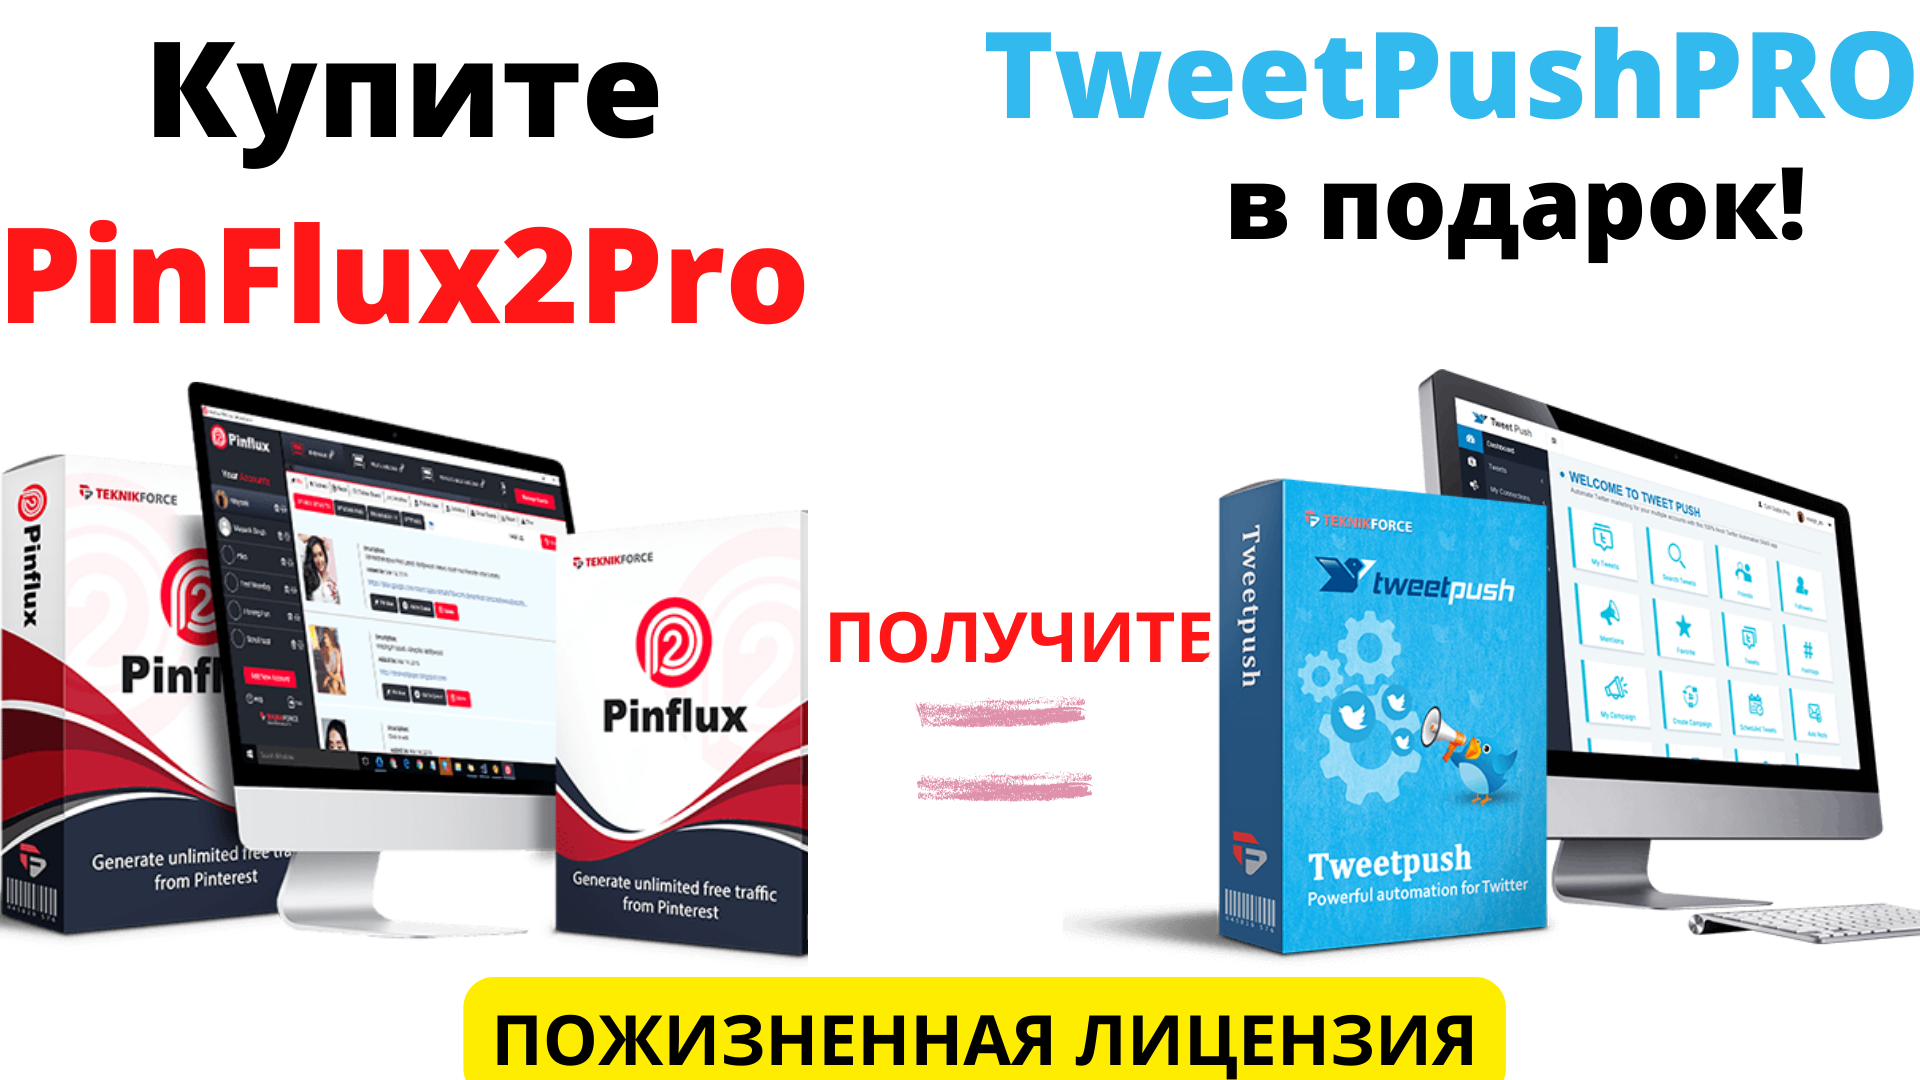 TweetPush PRO.png